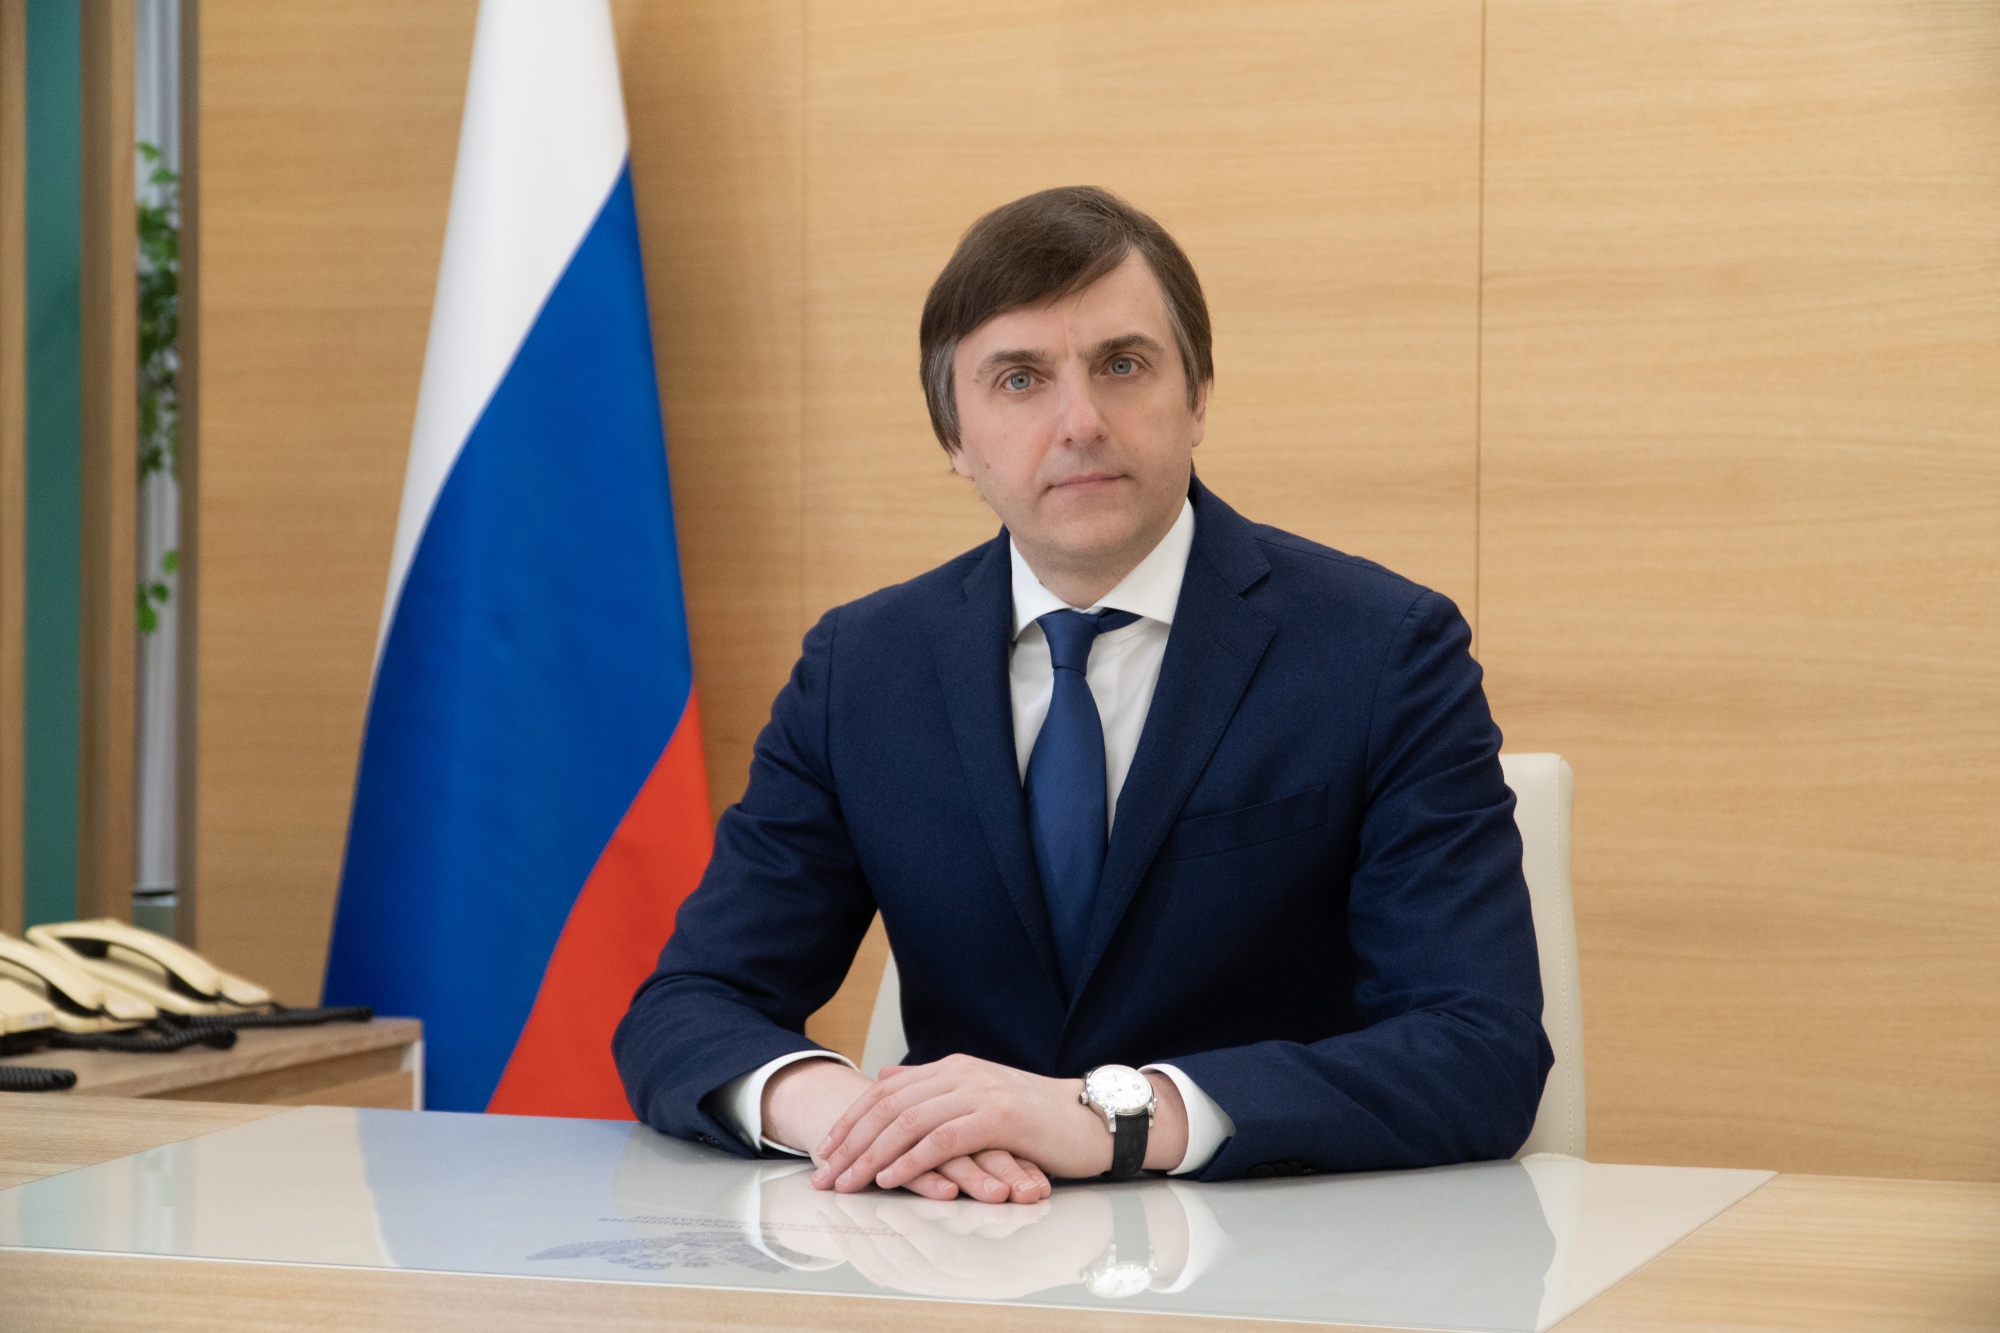 Комитет Госдумы по просвещению единогласно поддержал кандидатуру Сергея Кравцова на пост Министра просвещения РФ.